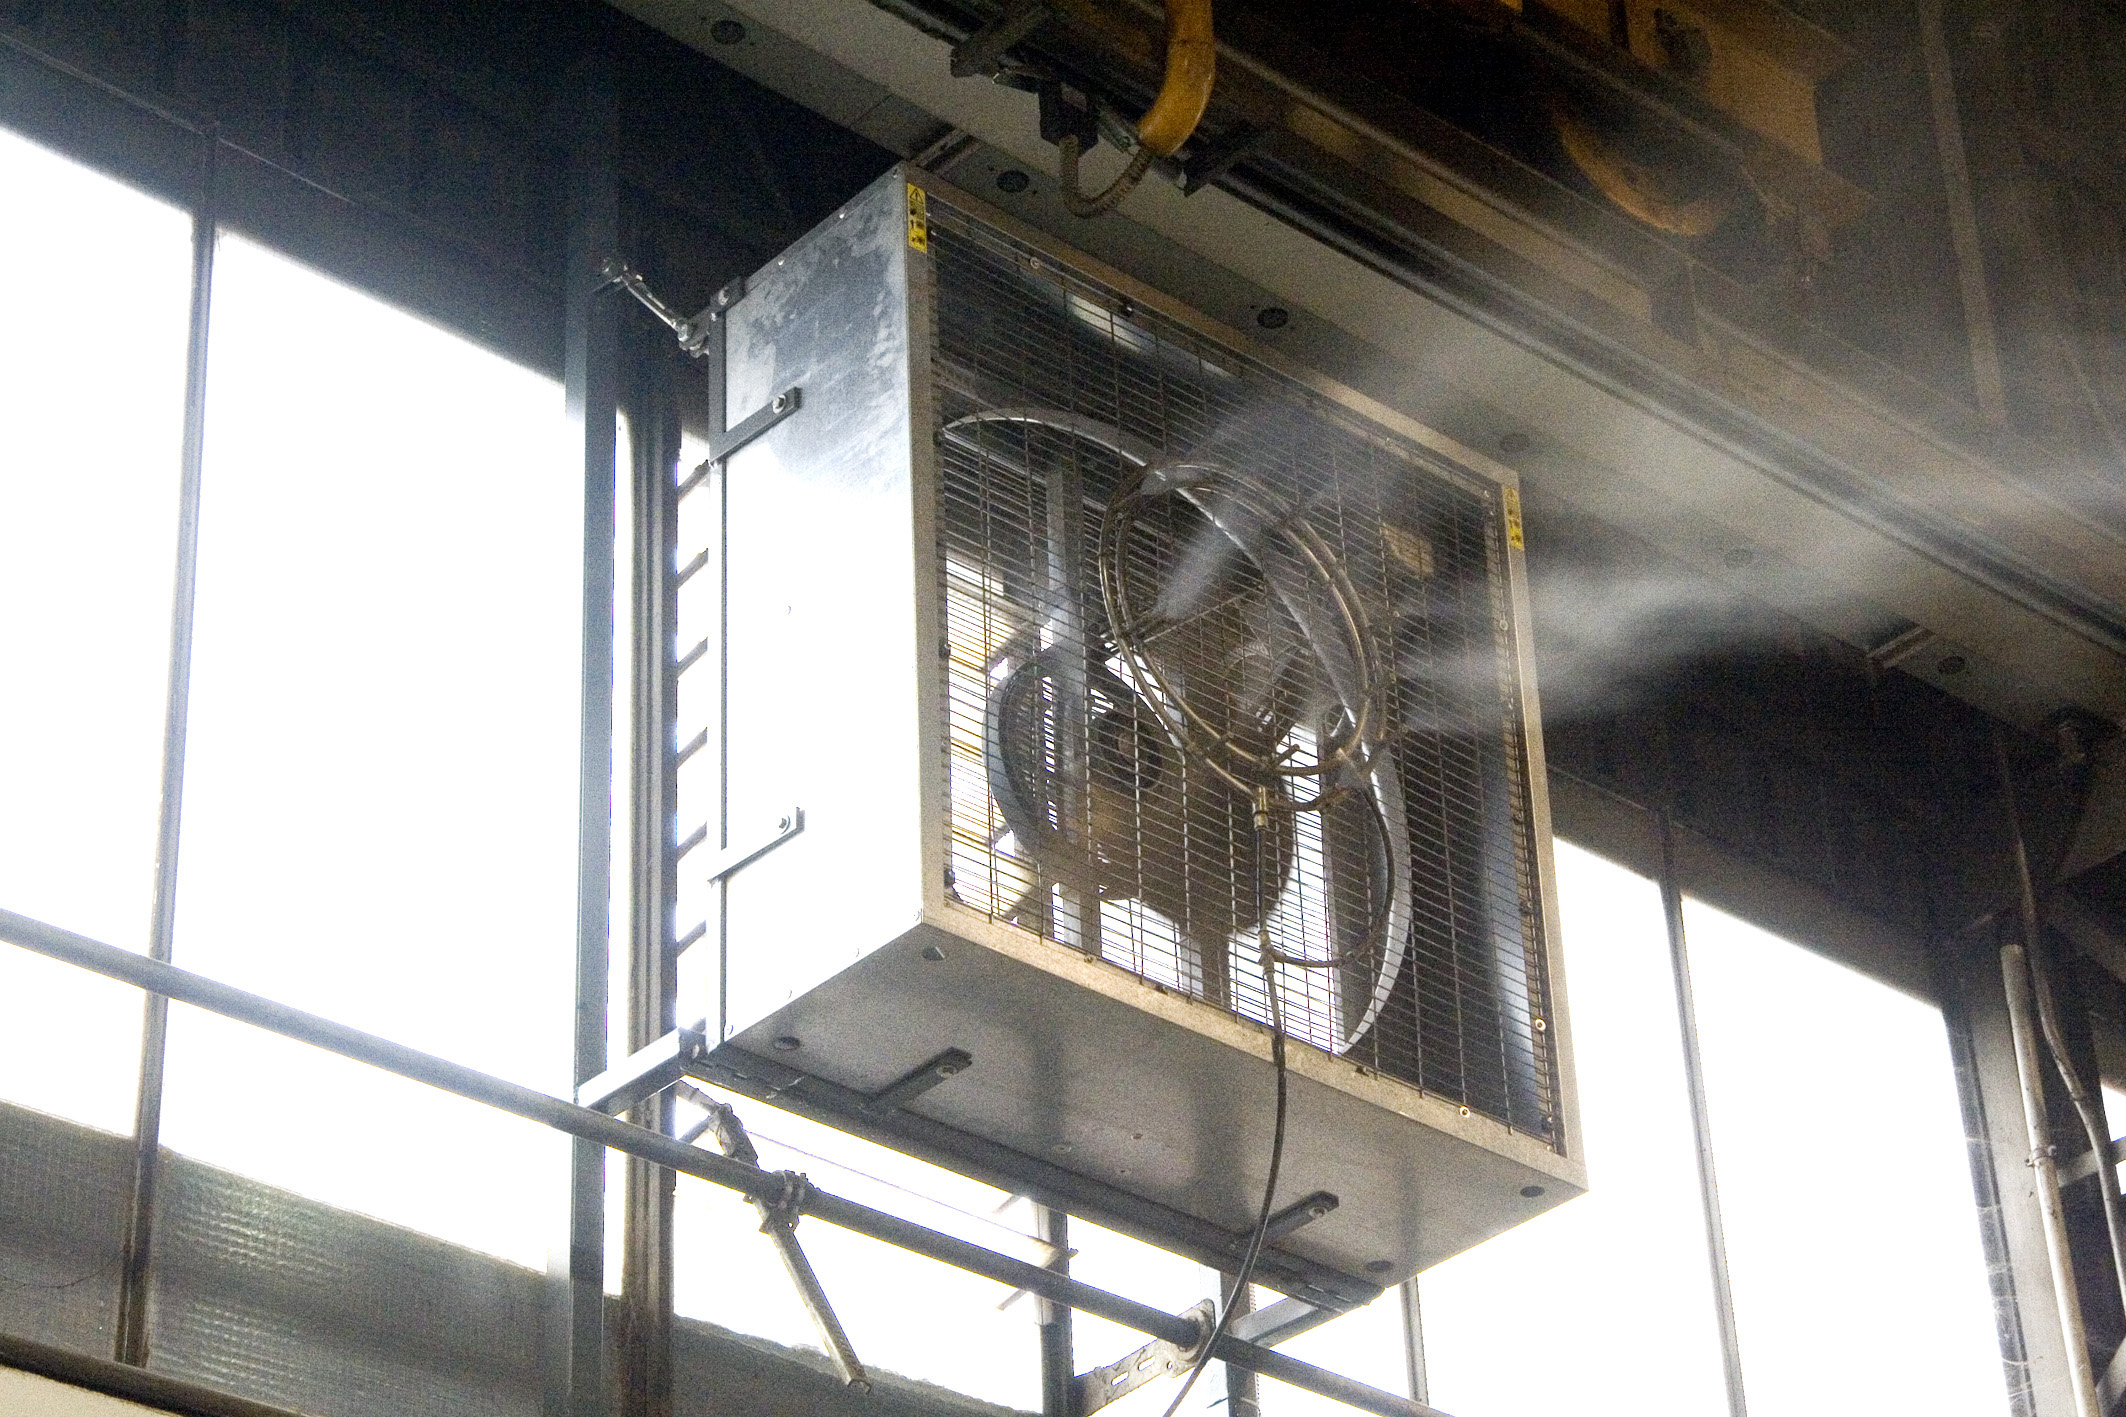 Vente de ventilateur industriel avec brumisateur 